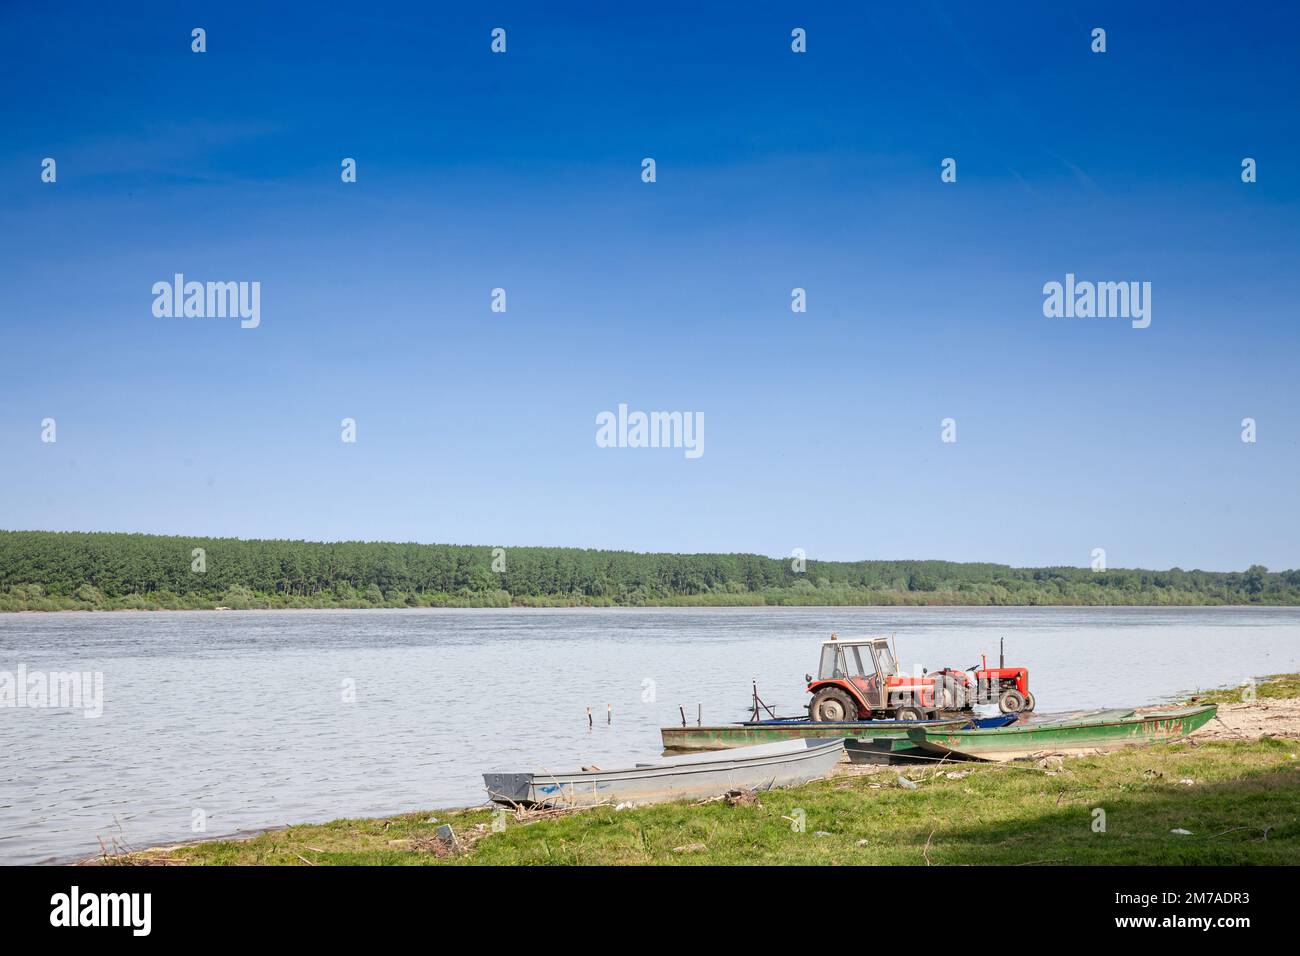 Panorama der Donau in Serbien mit Traktoren am Strand während eines sonnigen Sommernachmittages in Stari Slankamen, Serbien. Die Donau ist Europas sec Stockfoto